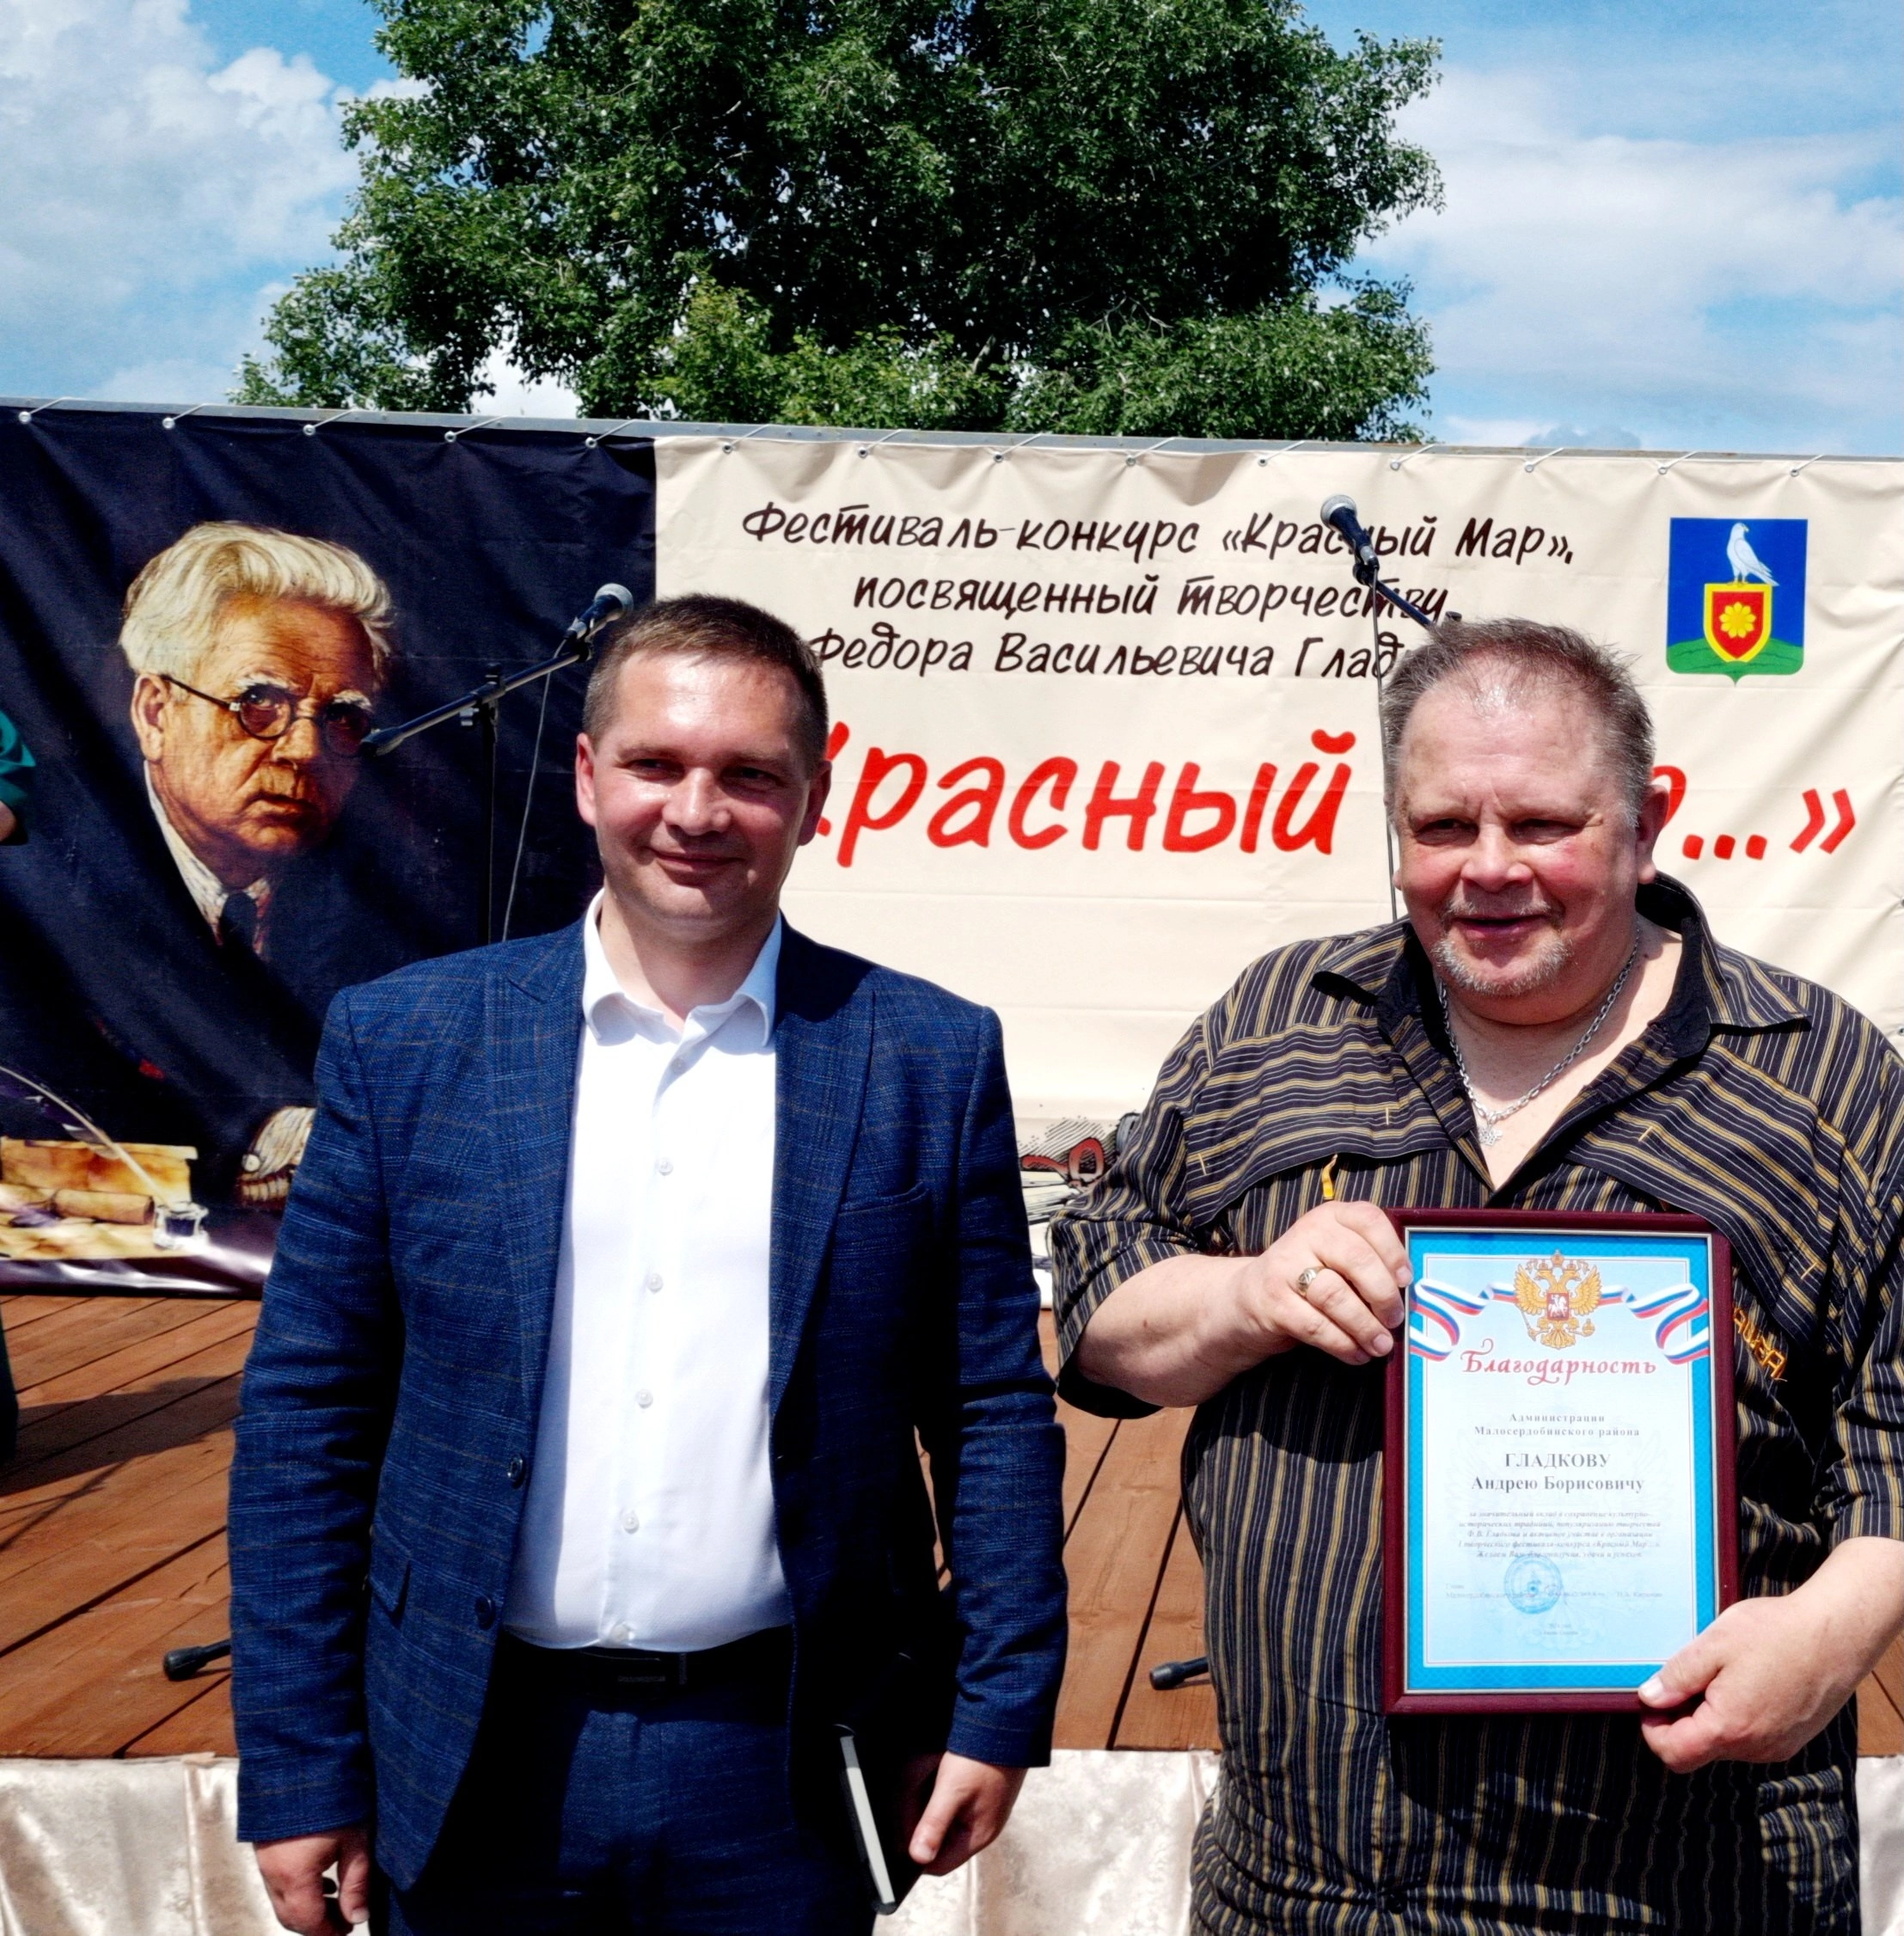 Андрей Гладков рассказал о судьбе деда в рамках фестиваля «Красный Мар» в Малосердобинском районе